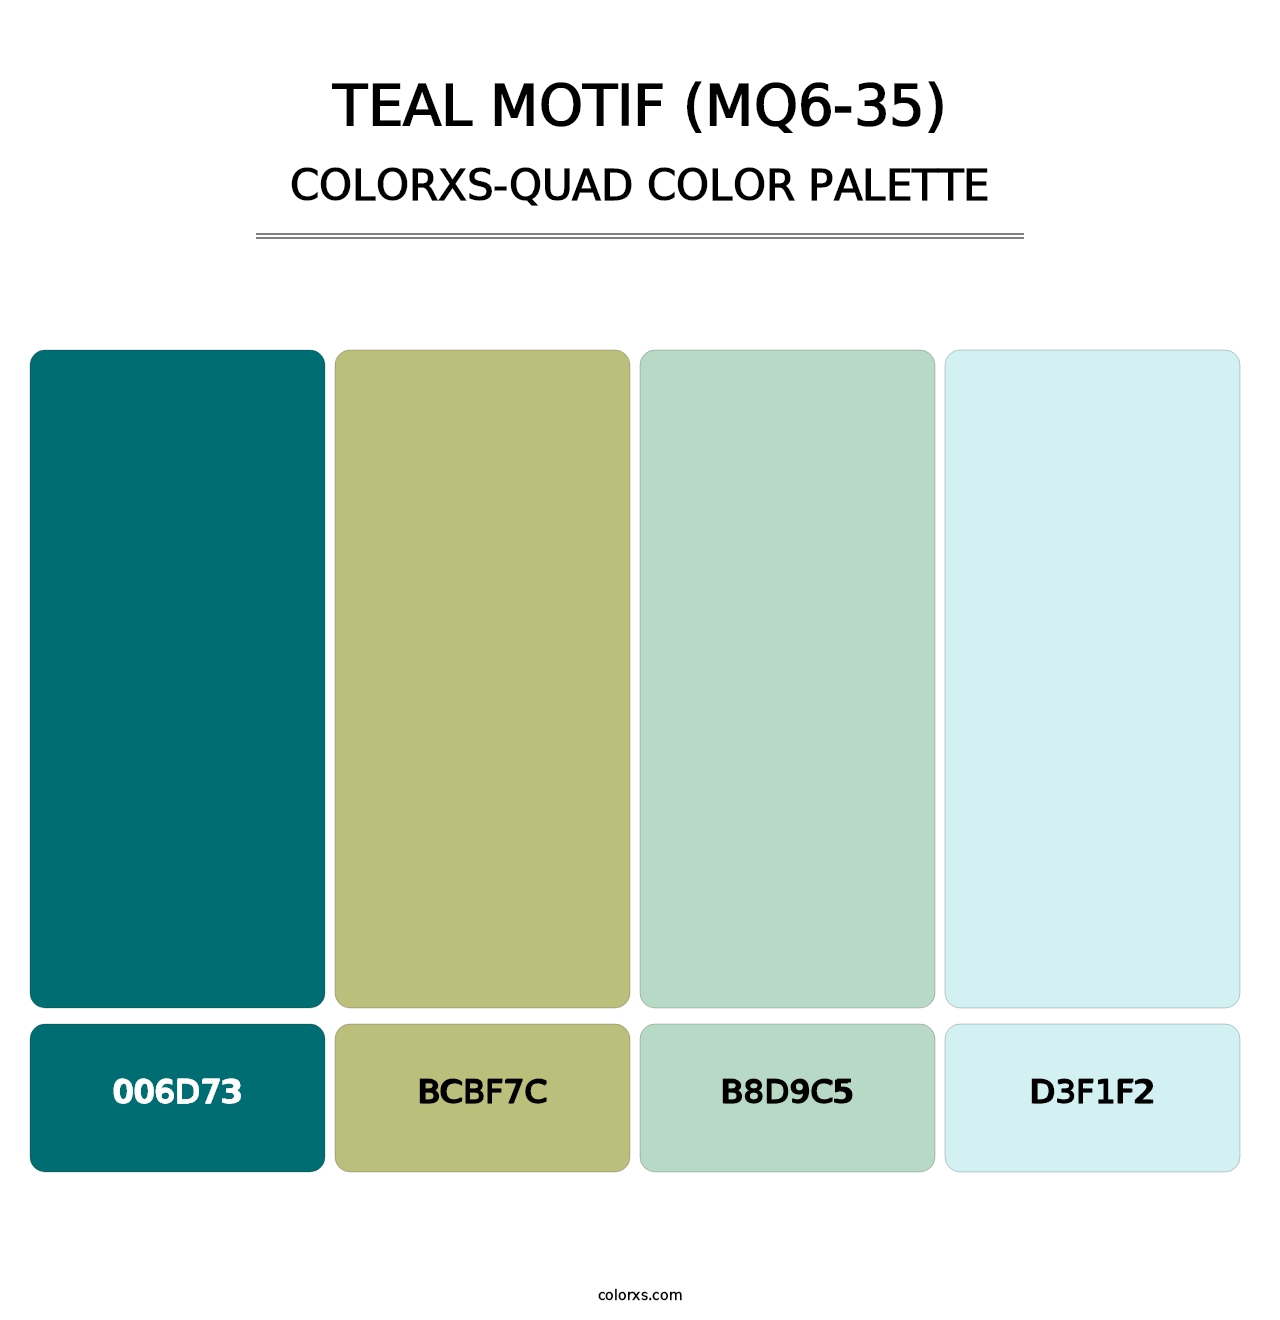 Teal Motif (MQ6-35) - Colorxs Quad Palette